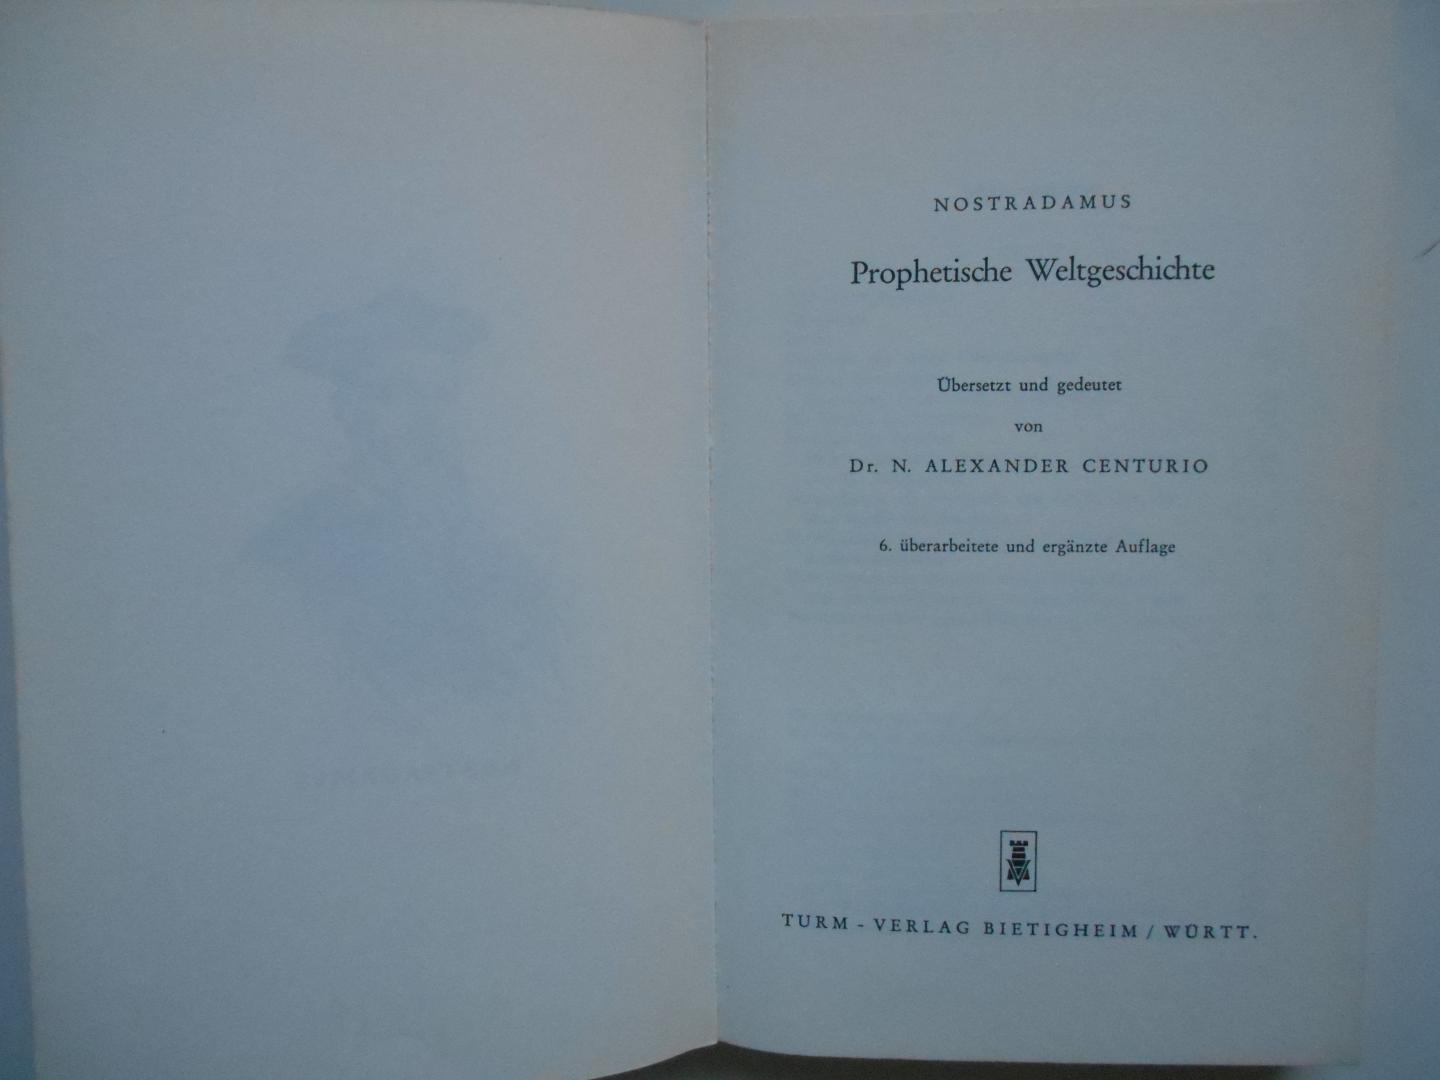 Centurio, Dr. N. Alexander - Nostradamus - Nostradamus Prophetische Weltgeschichte